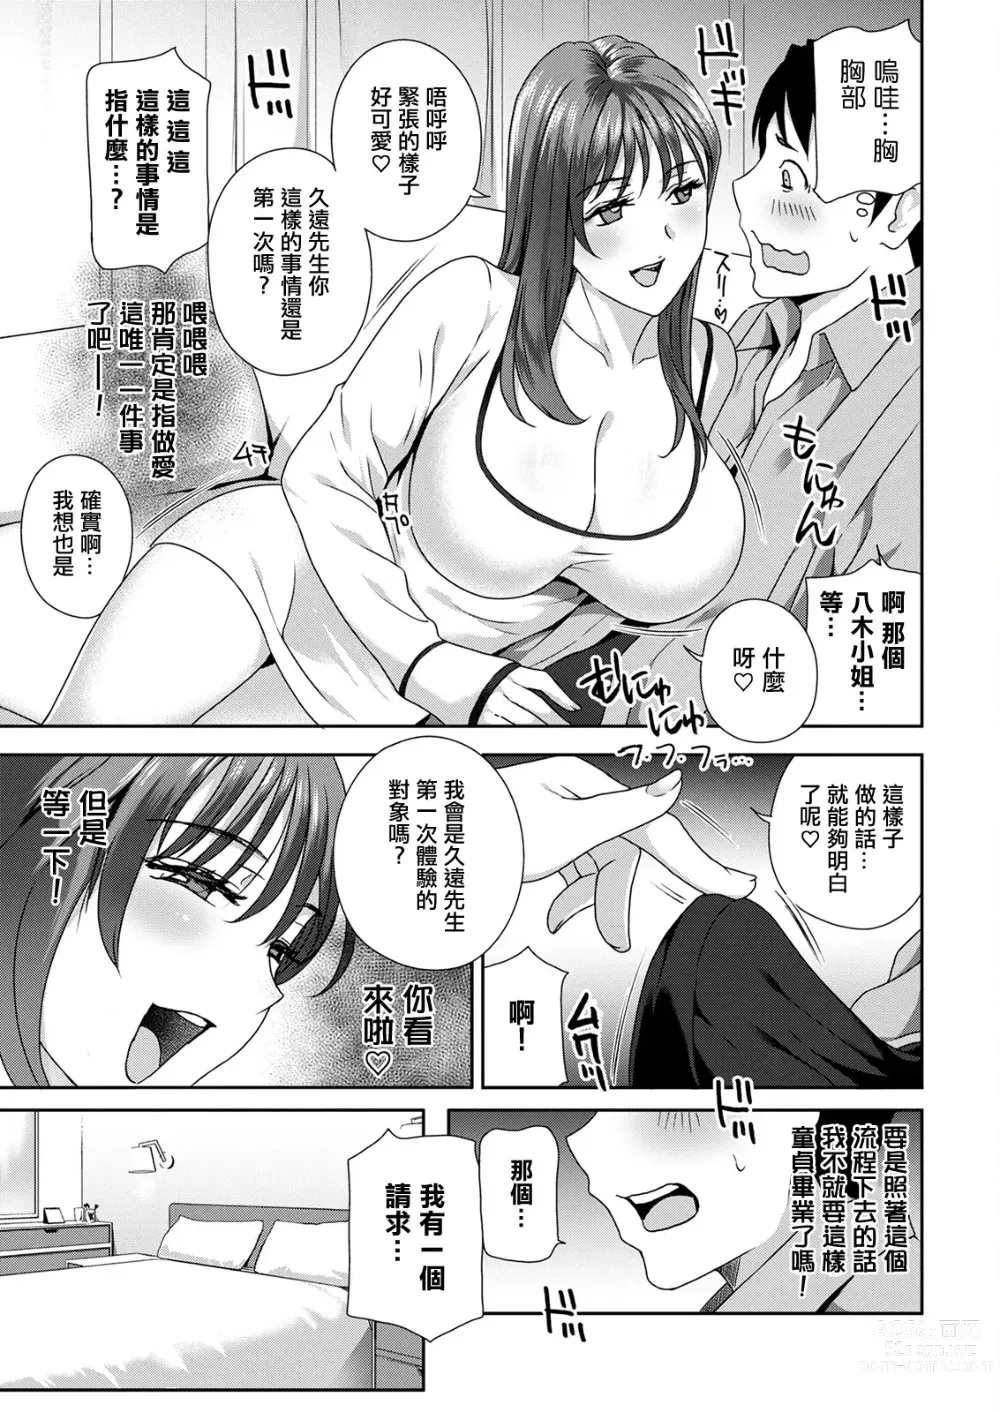 Page 9 of manga Hyoui!  Nupunupu Ana Ijime Ch. 1